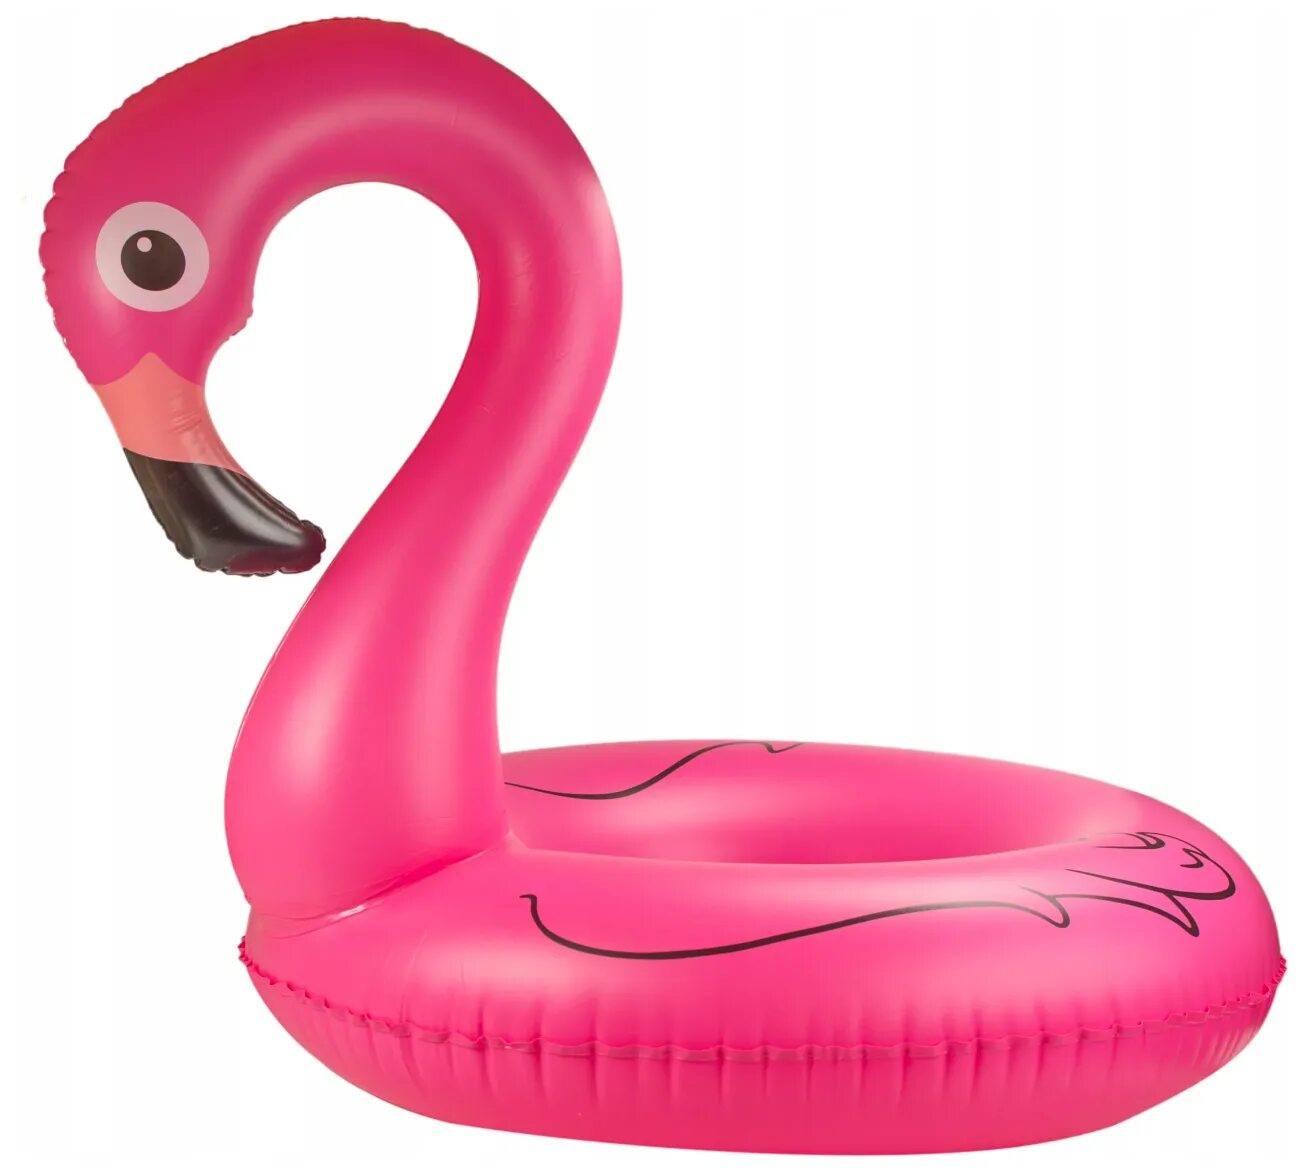 Круг для плавания Фламинго 90 см. Надувной круг Фламинго. Плавательный круг розовый Фламинго. Круг надувной Фламинго Intex. Фламинго для плавания